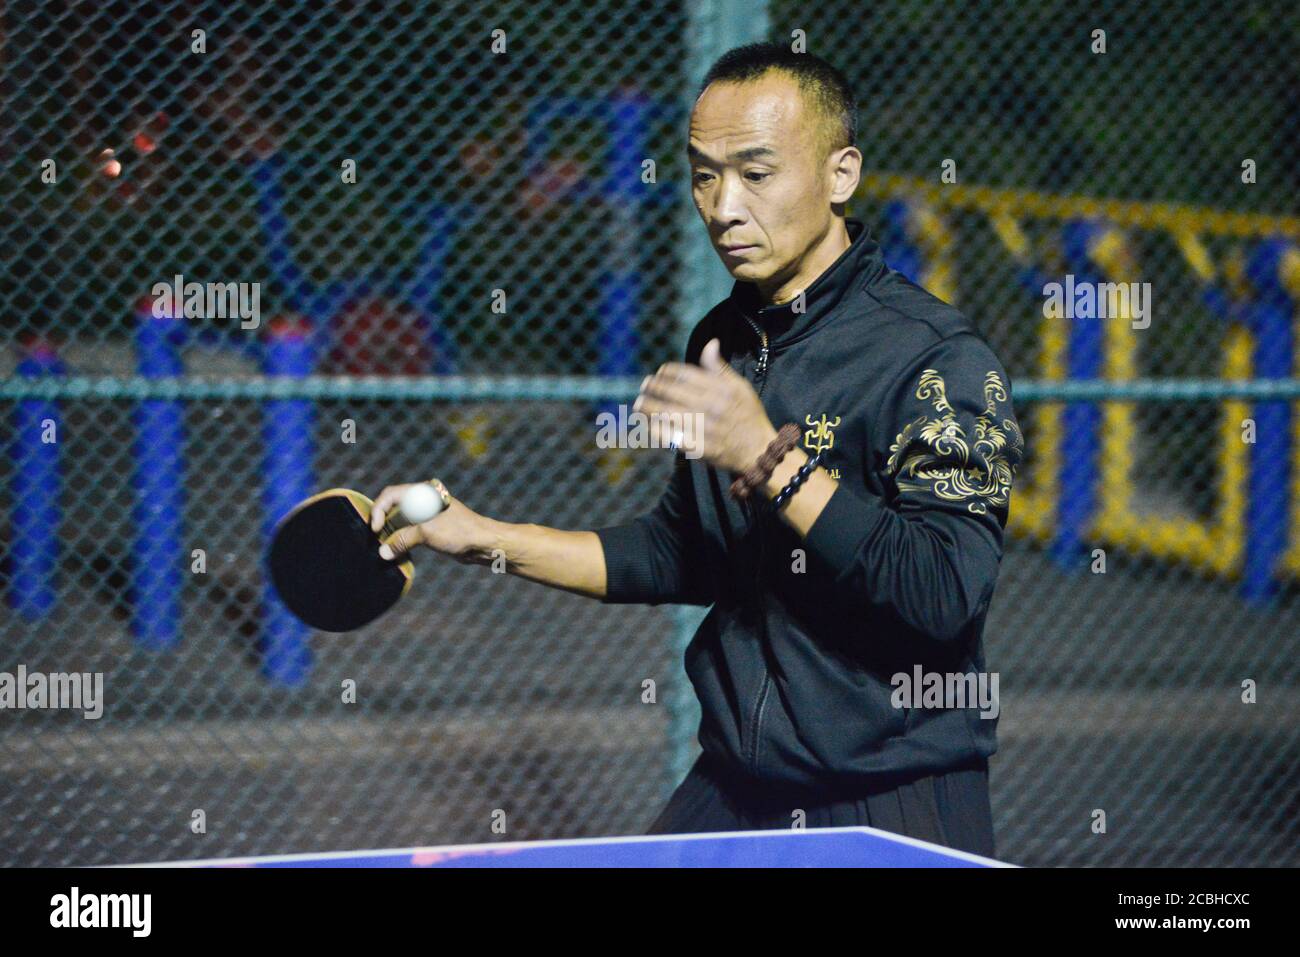 Uomo cinese che gioca a ping pong in un parco pubblico, Pechino, Cina Foto Stock